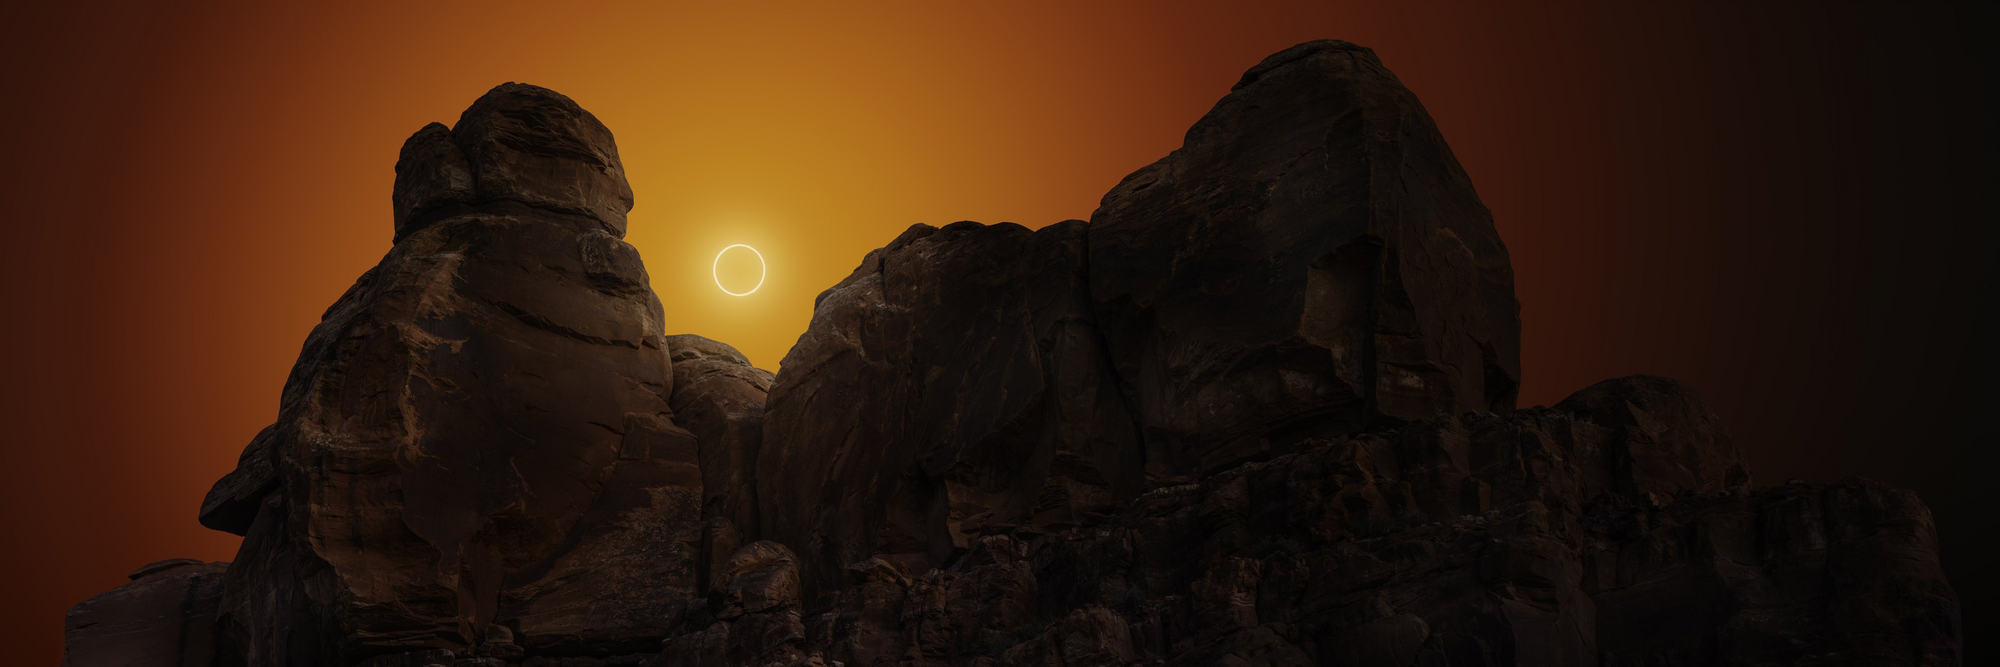 Астрофотограф показав фото сонячного затемнення, яке створювали 5 місяців: це схоже на інший світ